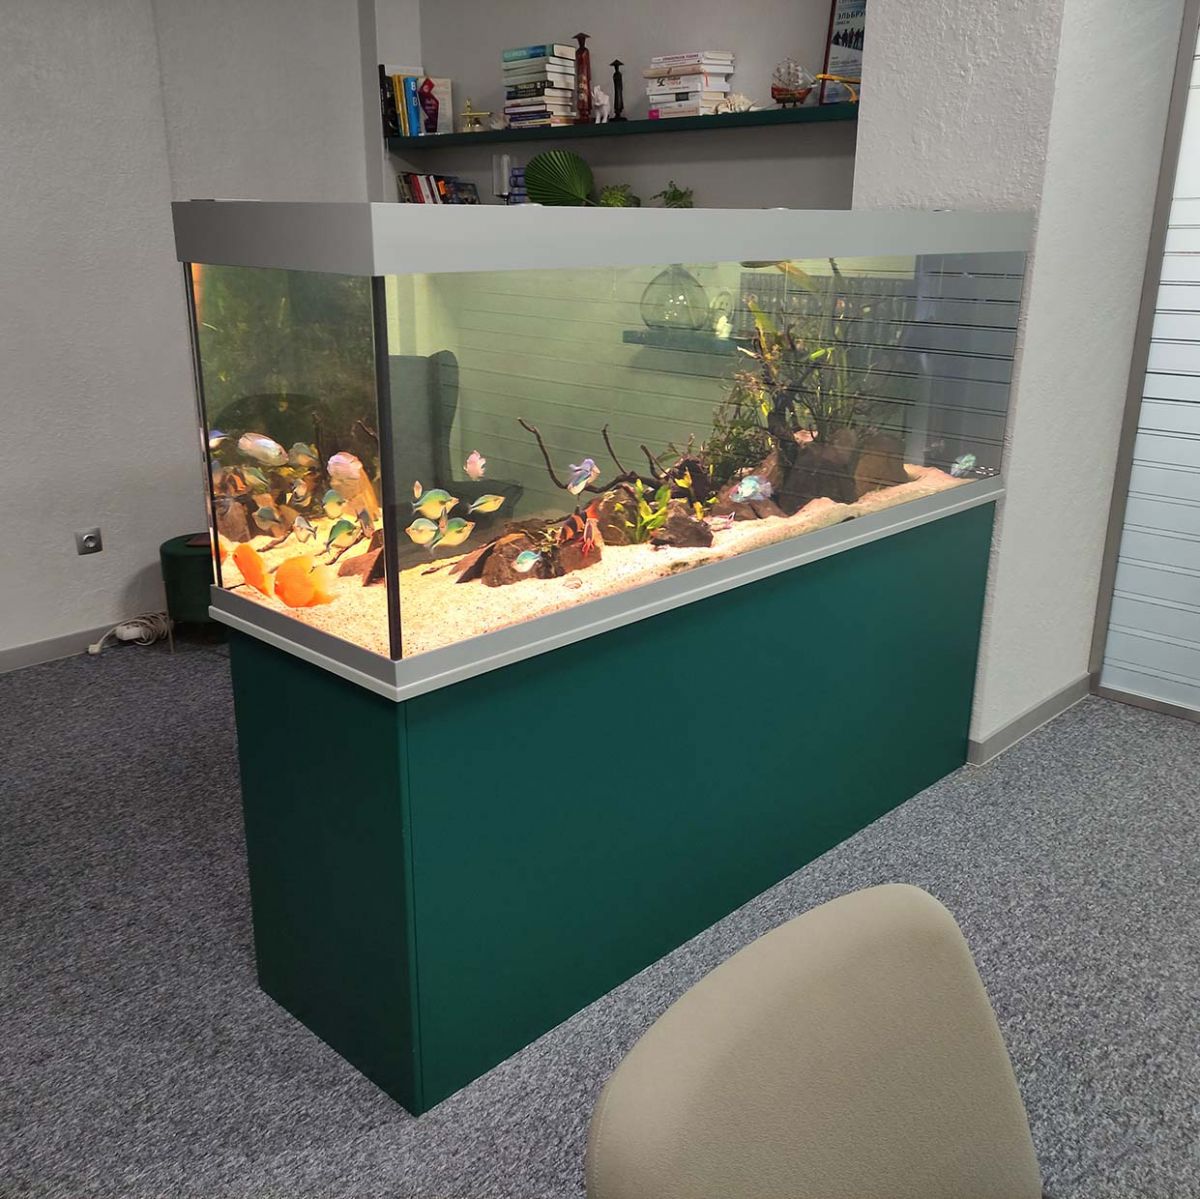 аквариум в офисе